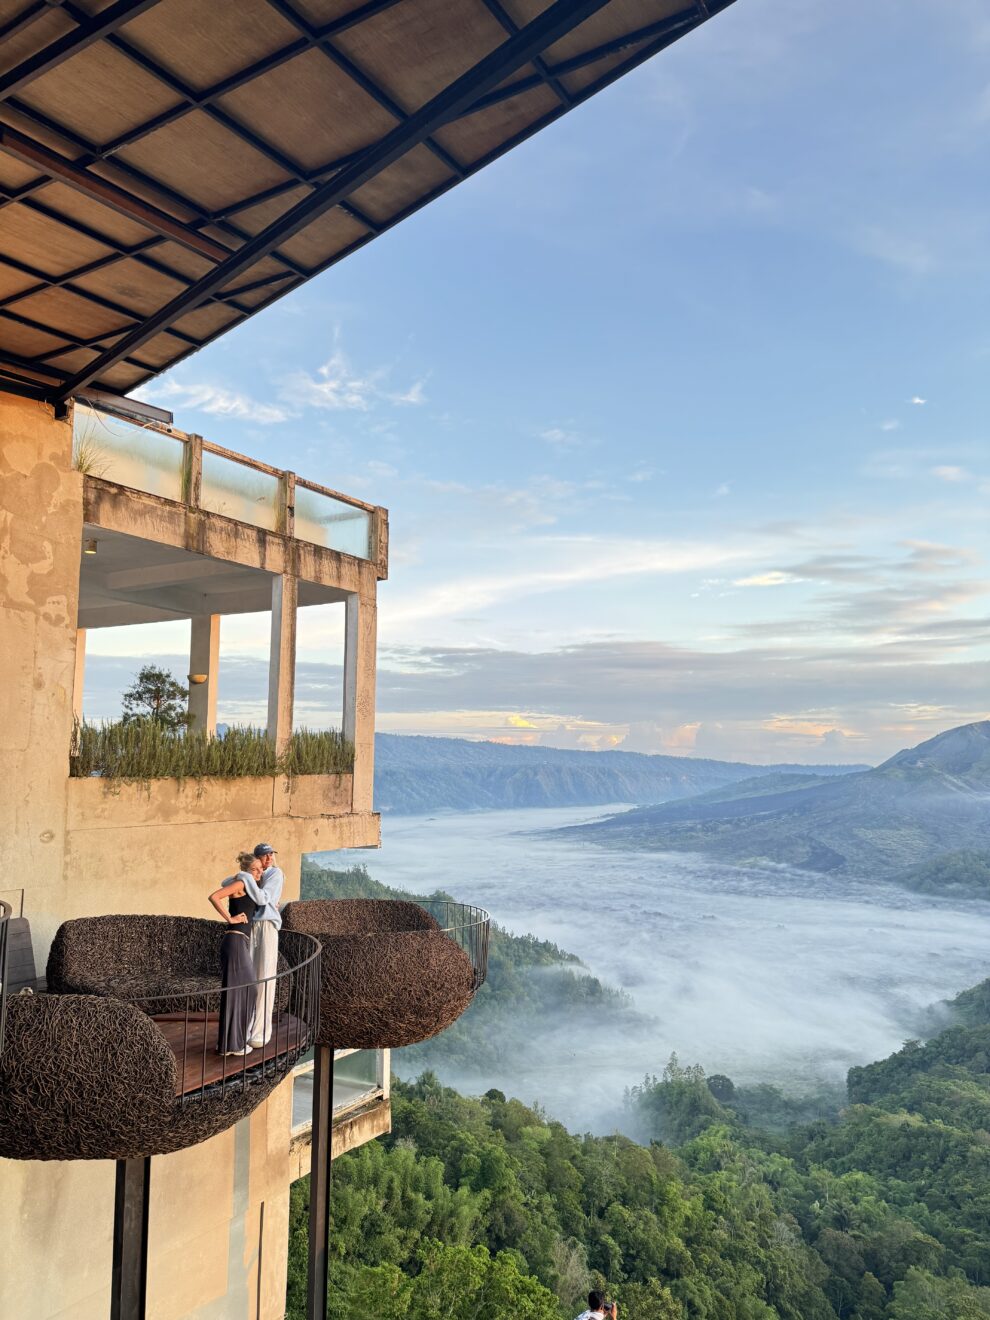 Mooiste foto spots op Bali, tips voor remote werken